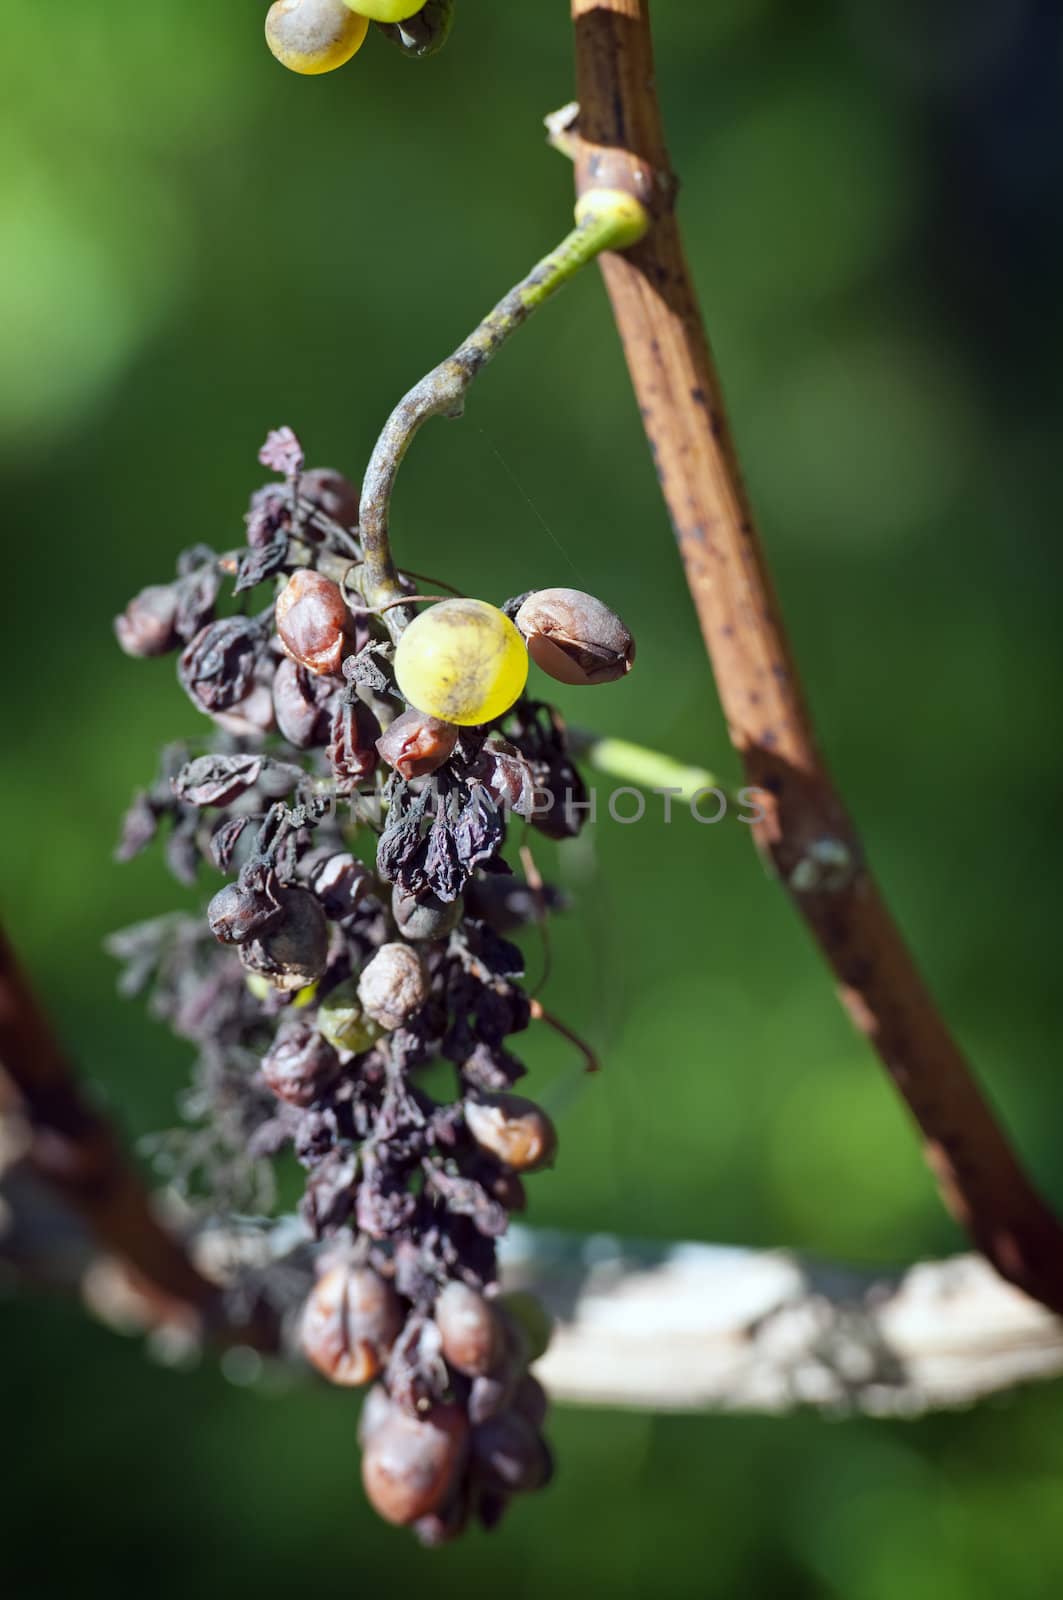 An Example of Peronospora, Grape disease